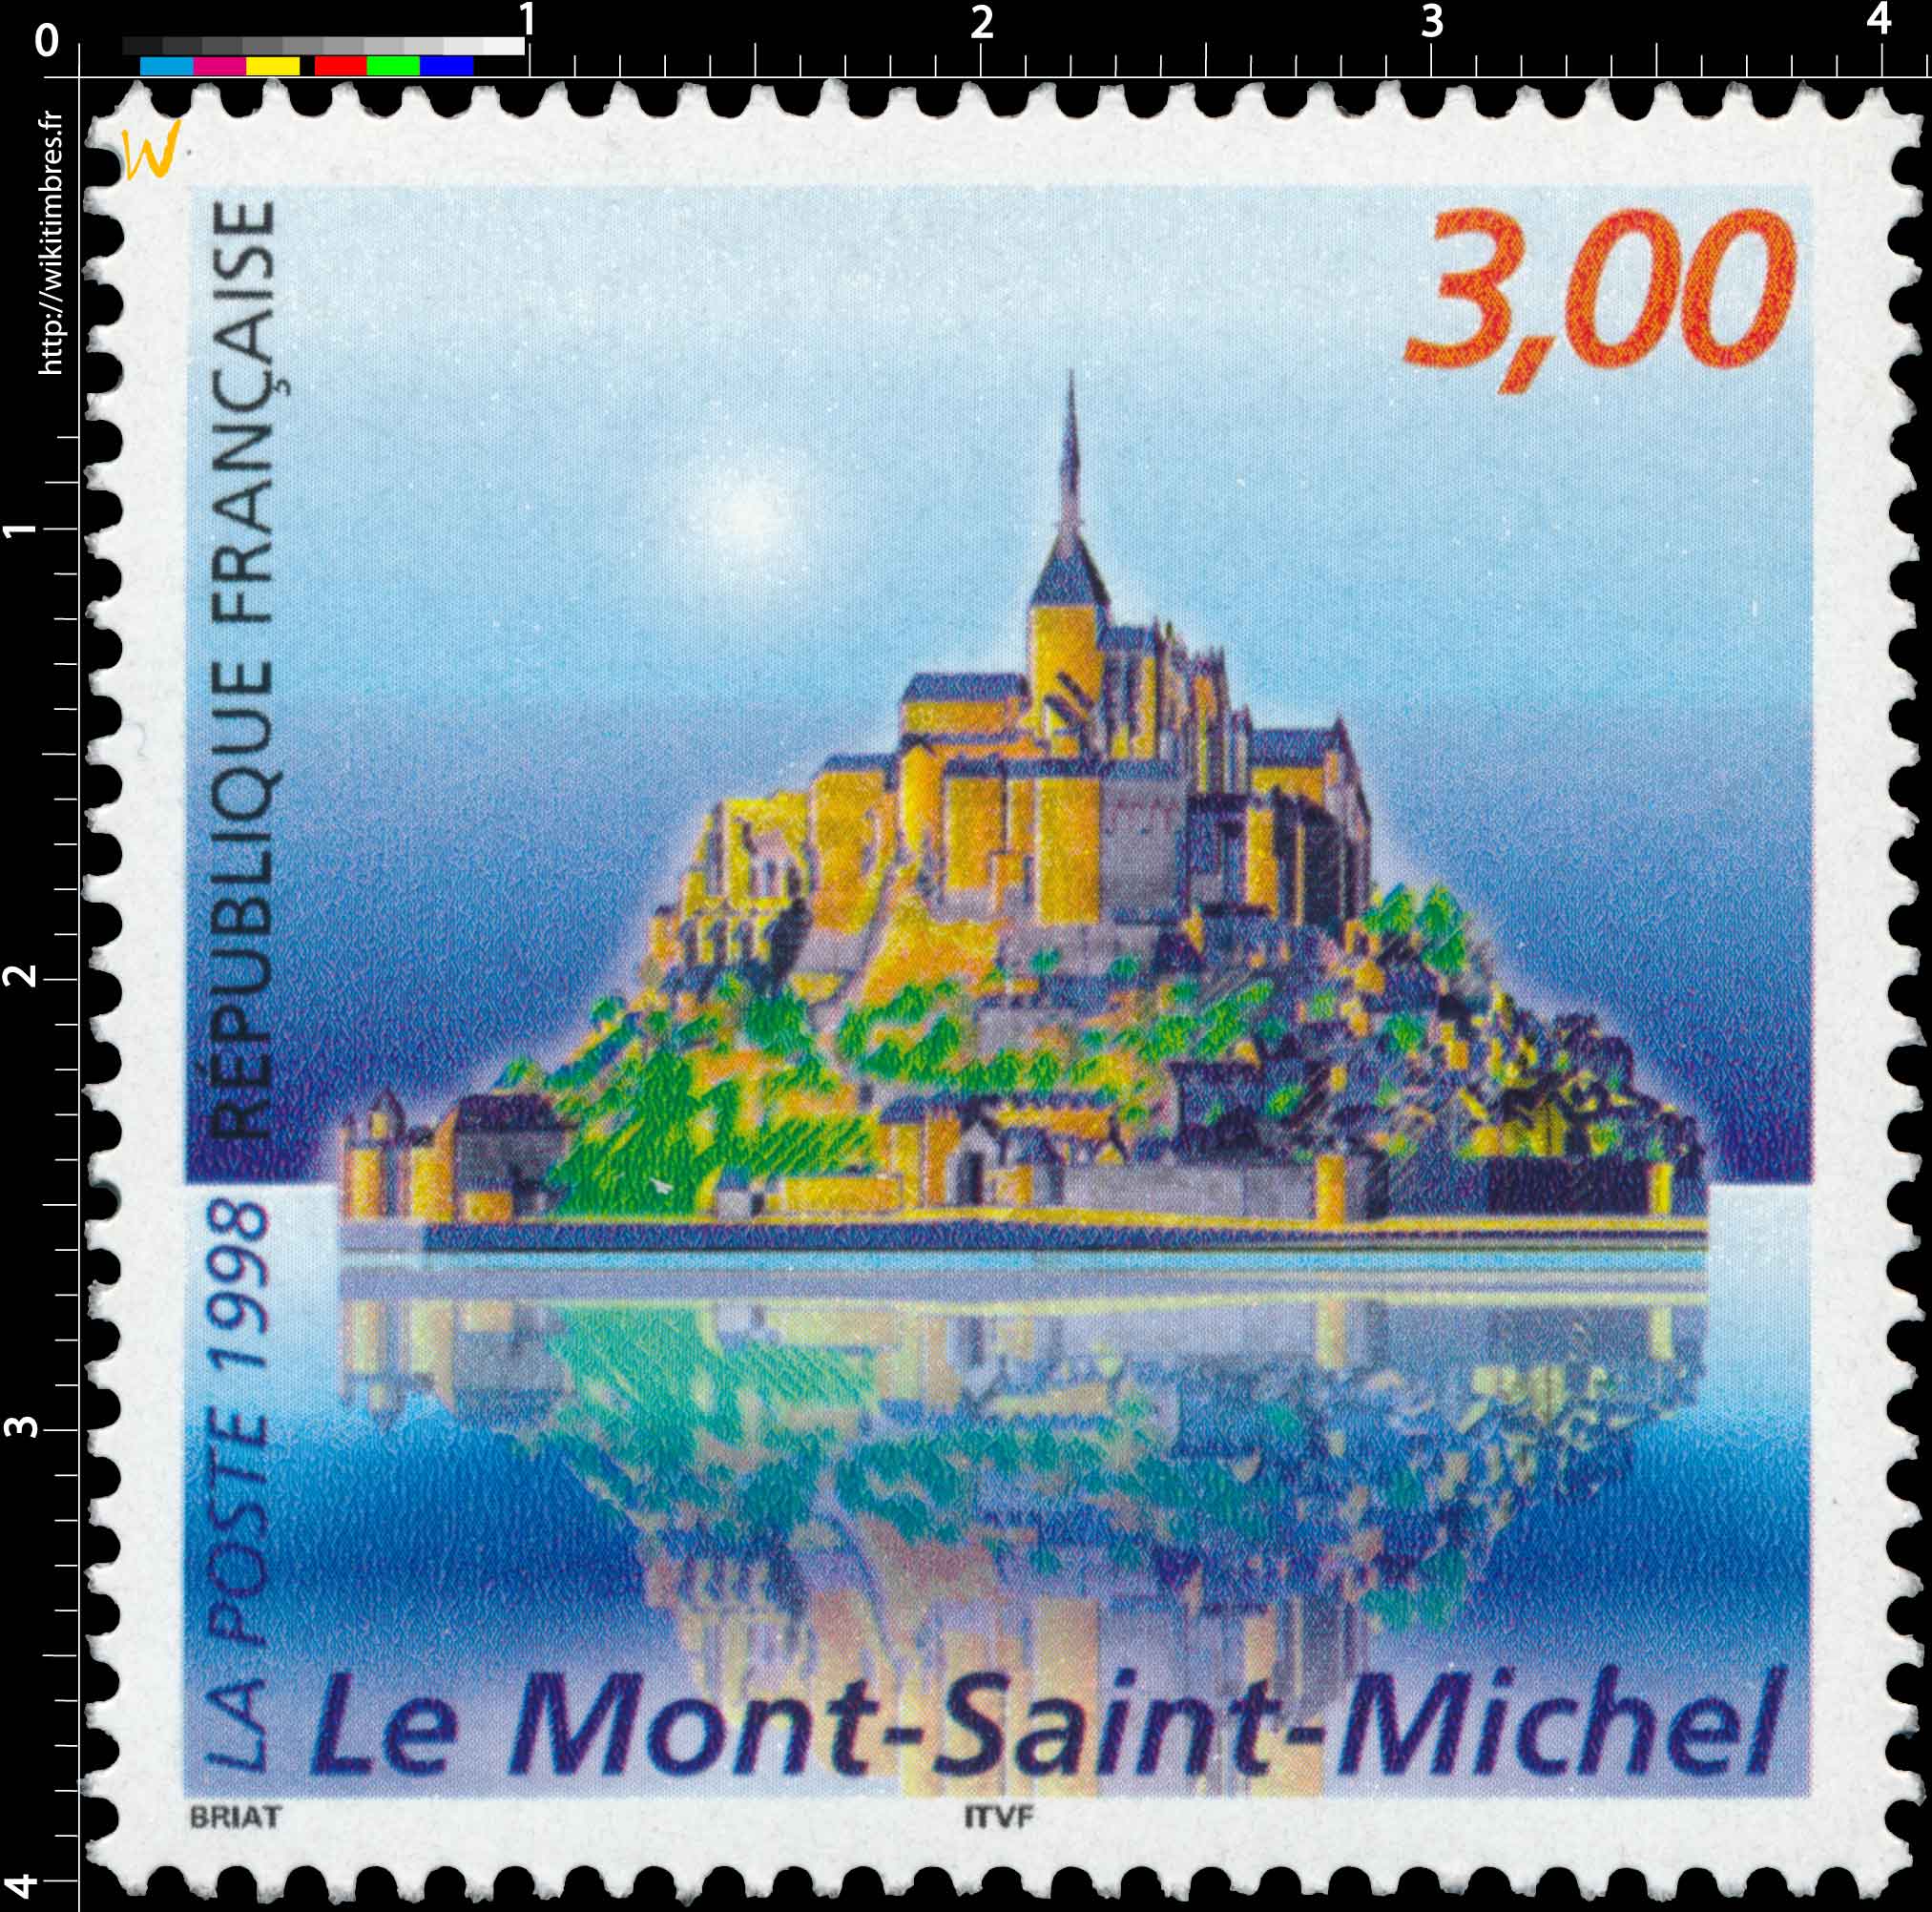 1998 Le Mont-Saint-Michel